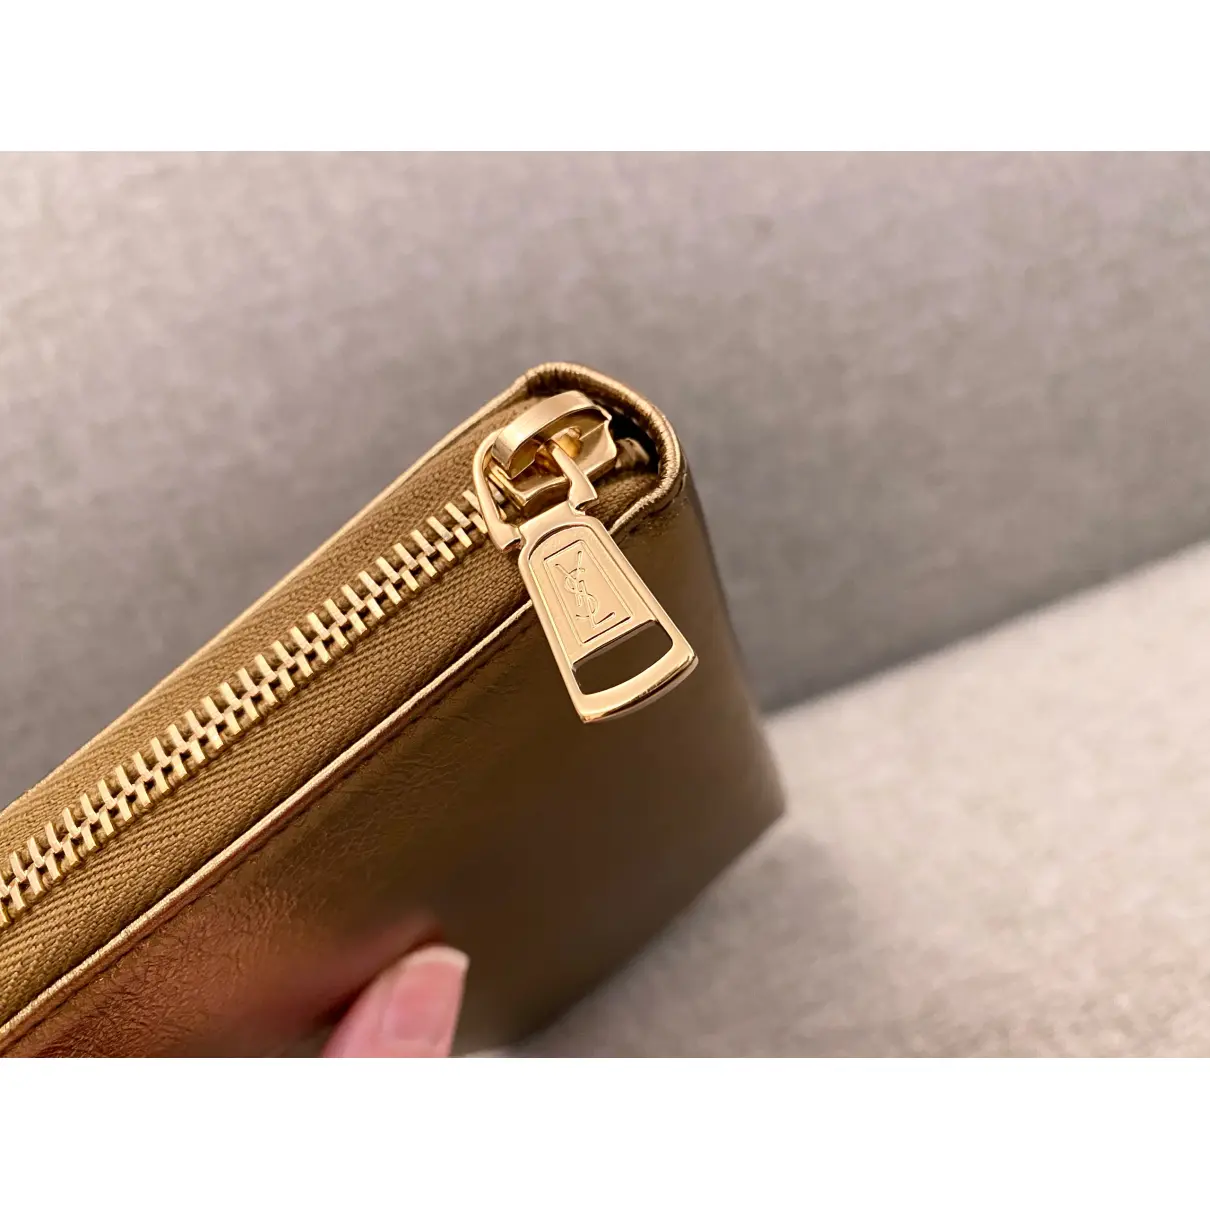 Belle de Jour leather wallet Yves Saint Laurent